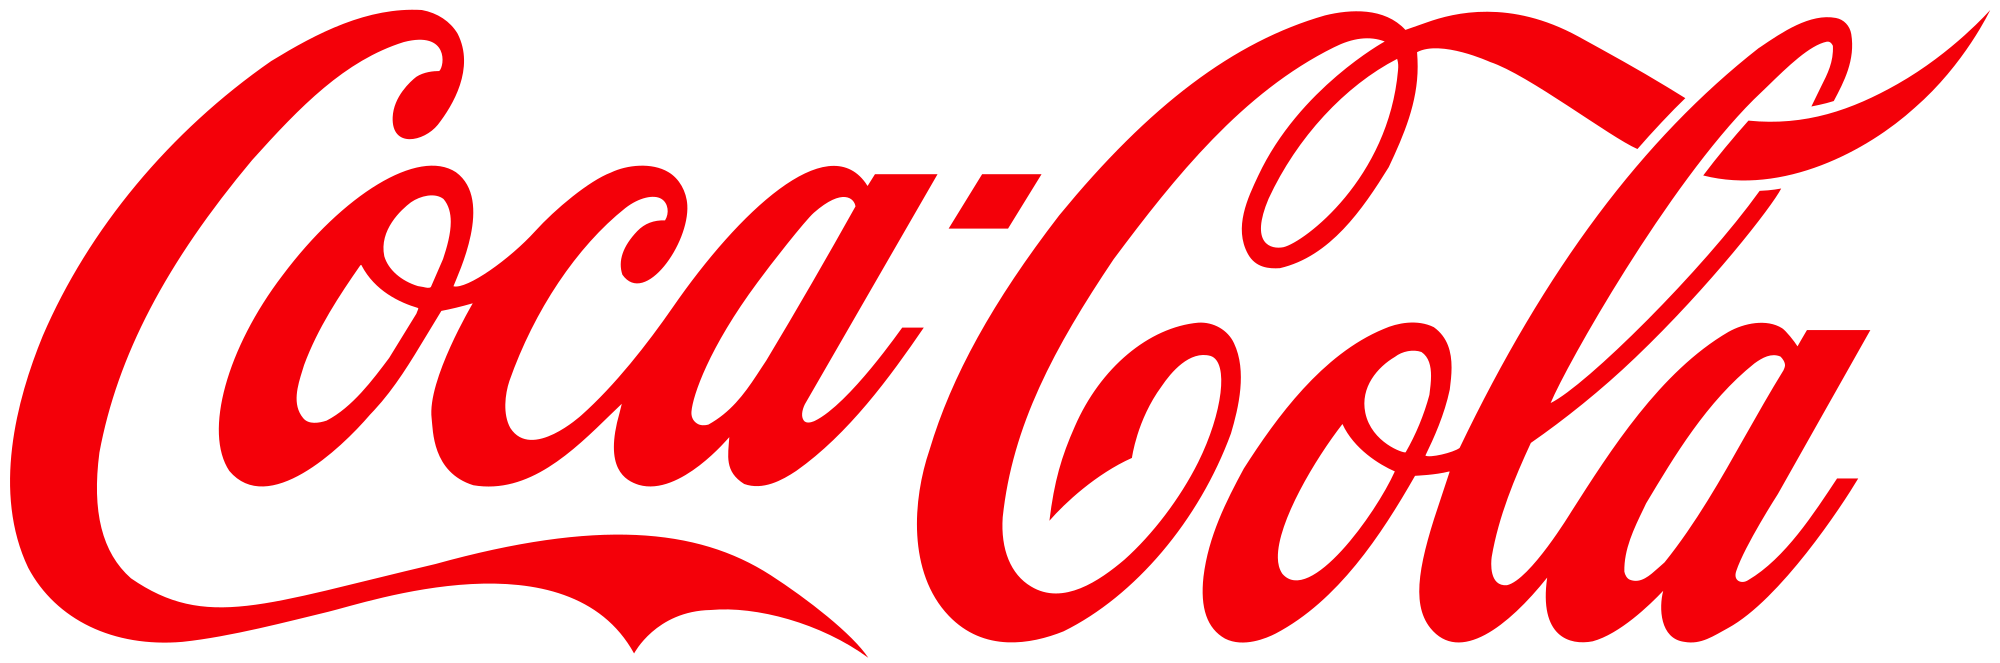  Promoção Coca Cola 2020